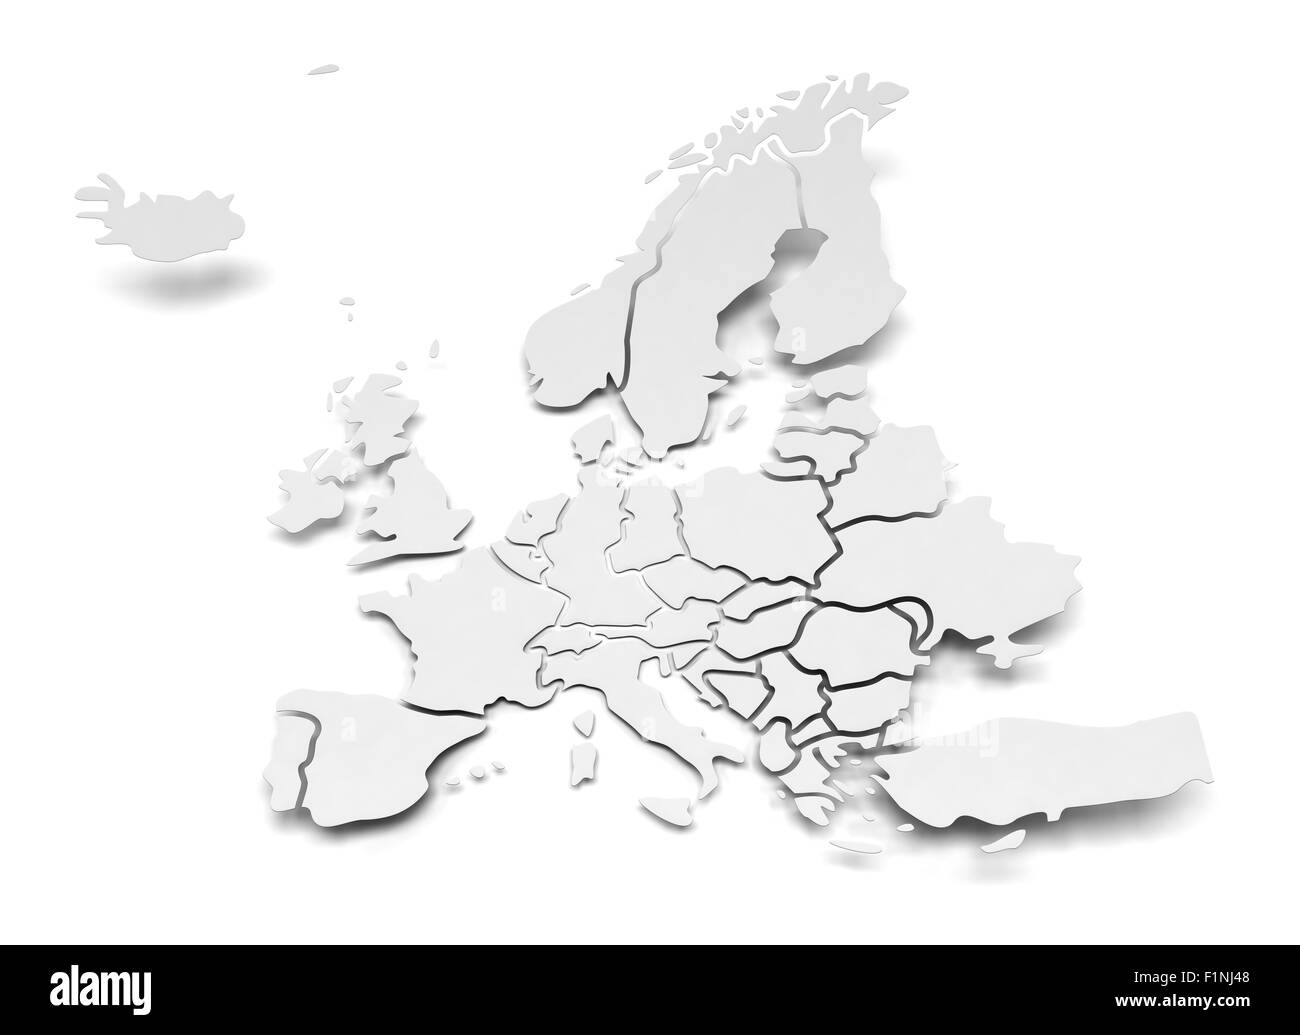 Détail carte en papier de l'Europe avec des frontières nationales Banque D'Images